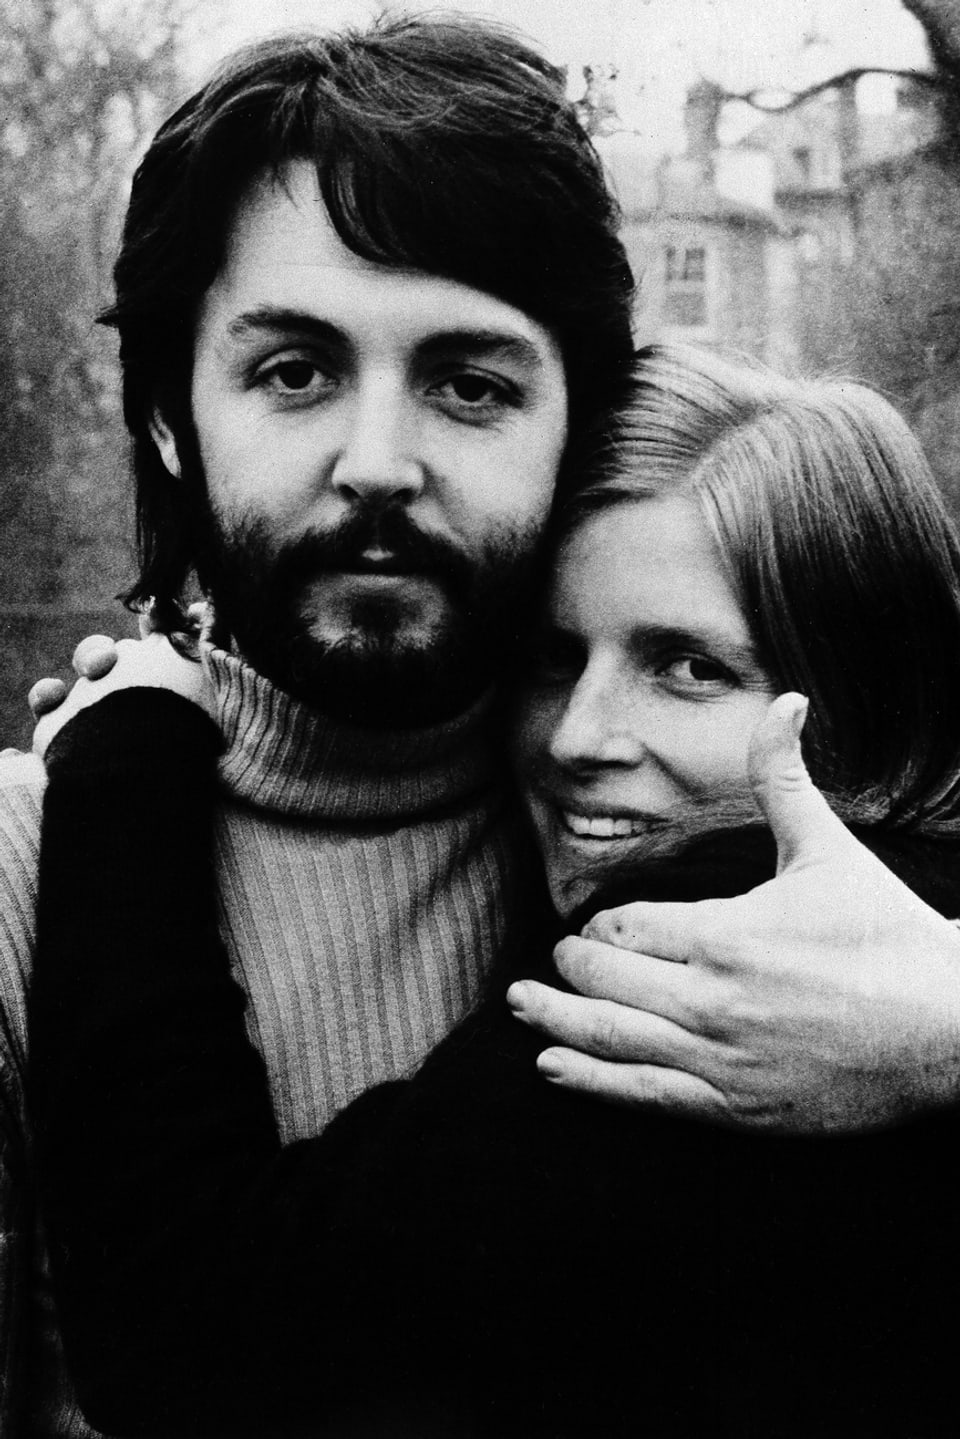 Paul und Linda in der Zeit der Plattenaufnahmen.